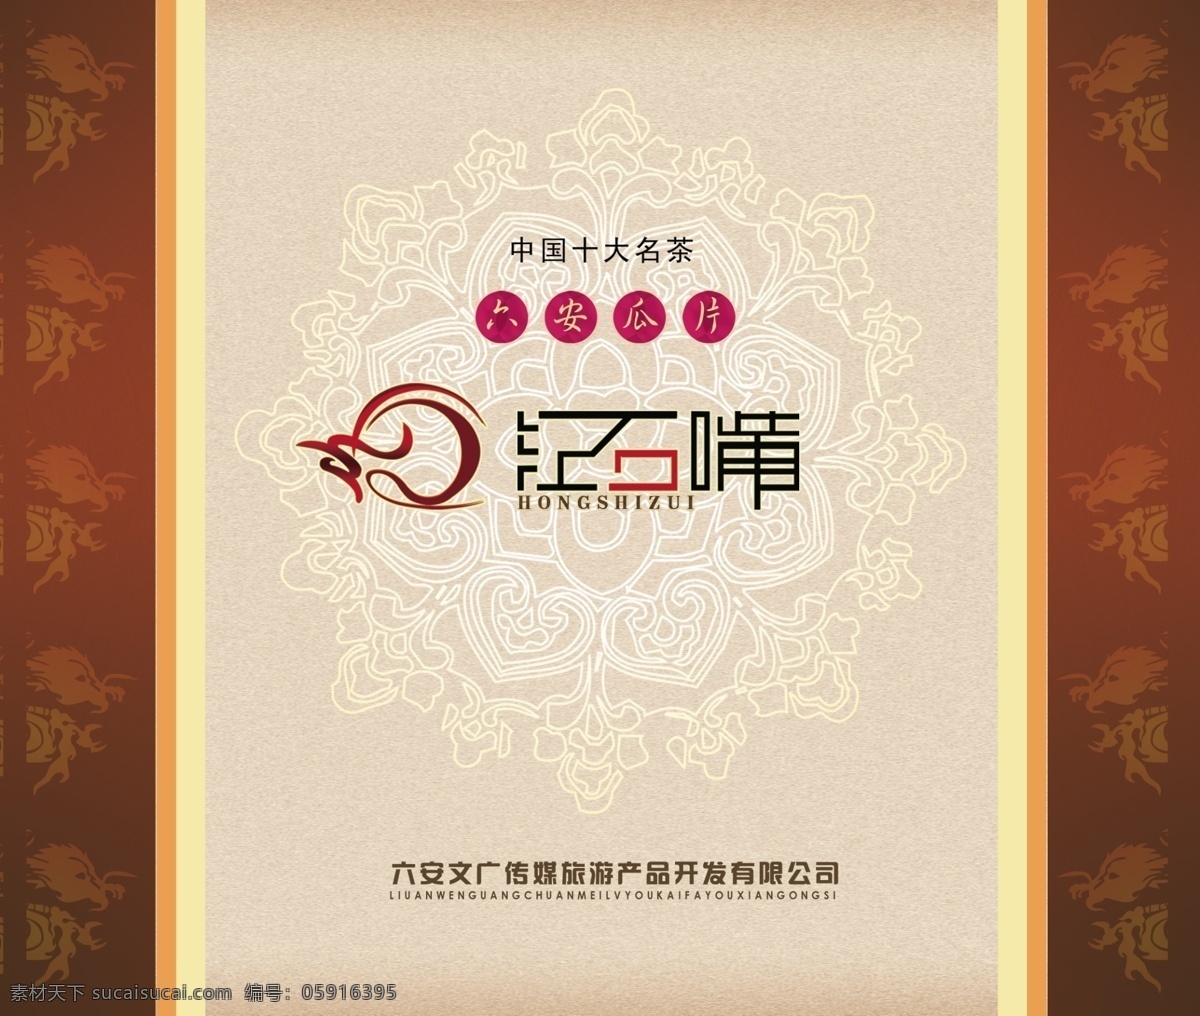 包装盒 产品包装 包装设计 产品包装背景 包装盒设计 中国 名茶 广告设计模板 psd素材 白色